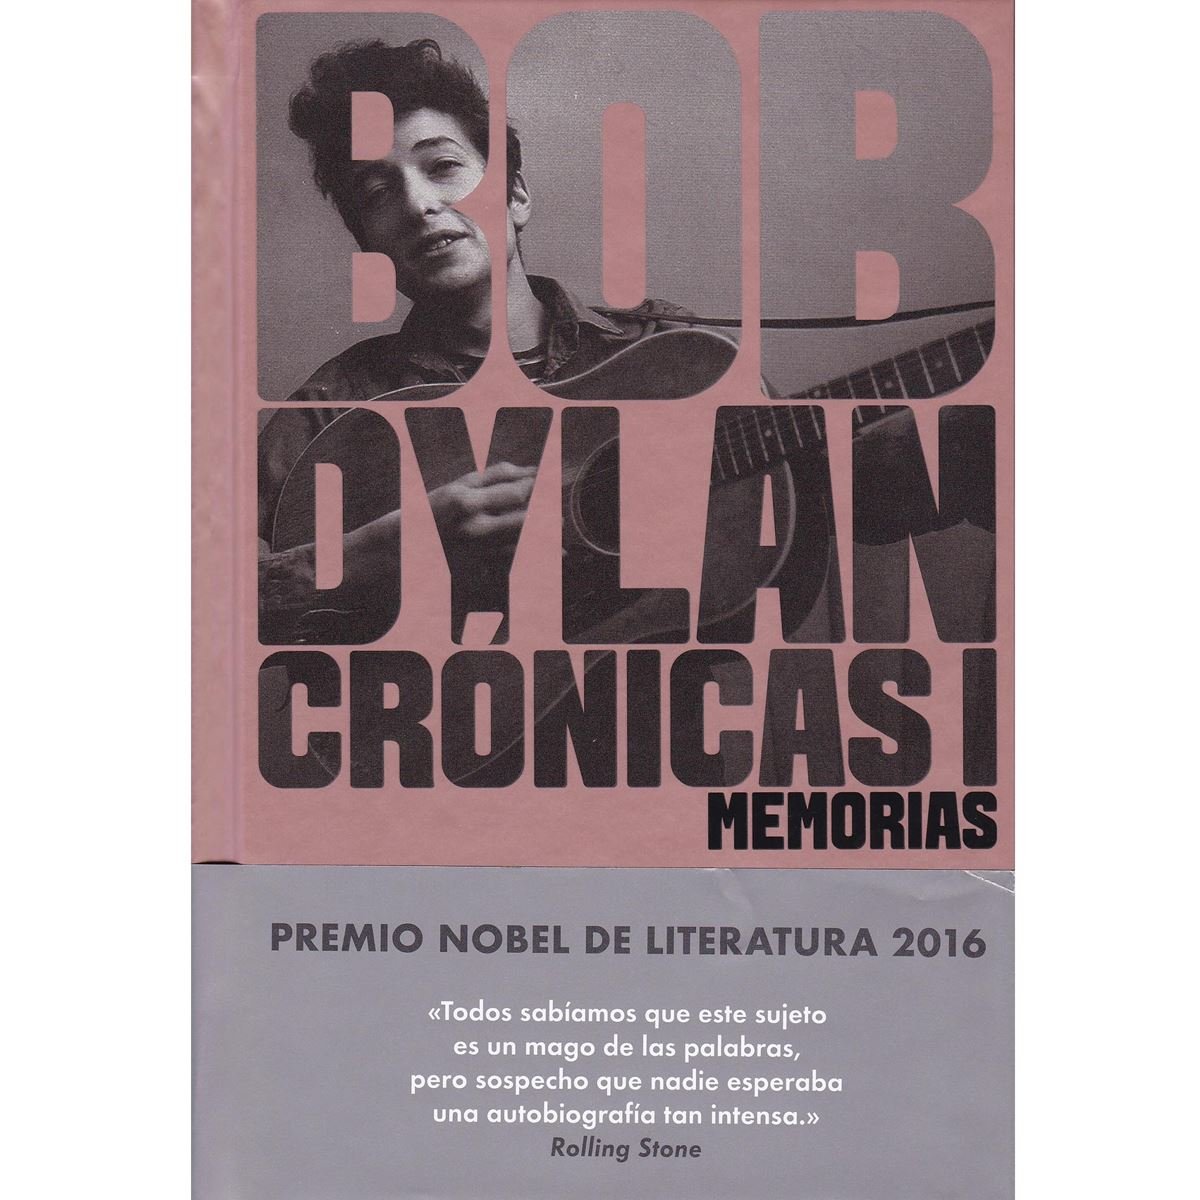 Bob Dylan cronicas i memorias